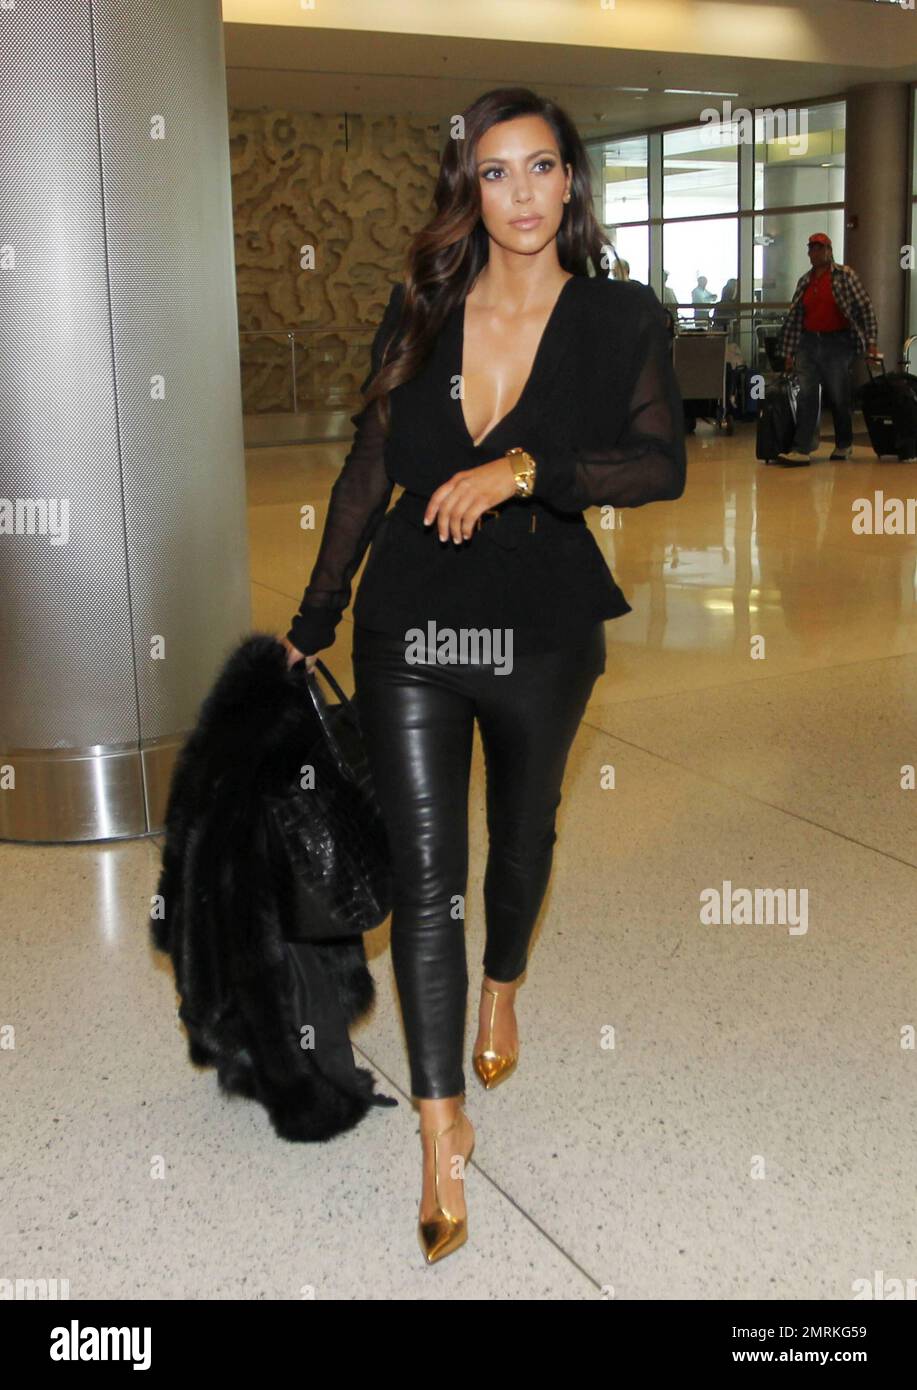 Kim Kardashian wurde gesehen, wie er am Miami International Airport ankam, um einen Flug aus der Stadt zu erwischen. Kim trug ein schwarzes, transparentes Oberteil mit schwarzen Lederhosen und goldenen hohen Absätzen und trug eine große schwarze Handtasche und eine schwarze pelzige Jacke. Miami, Florida 17. Oktober 2012. Stockfoto